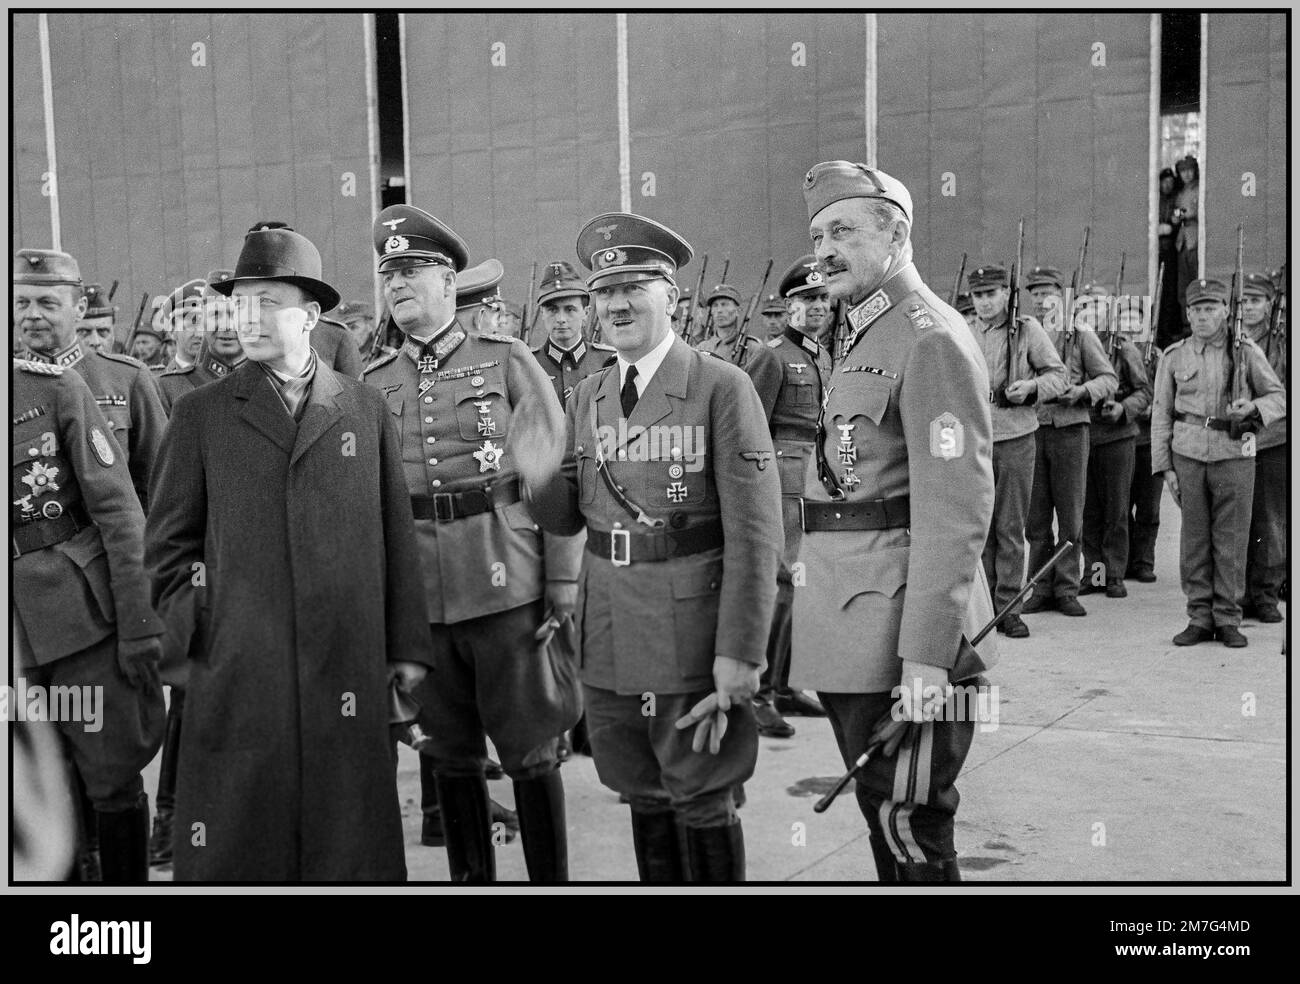 MANNERHEIM / HITLER Adolf Hitler a décidé de visiter la Finlande le 4 juin 1942, ostensiblement pour féliciter Mannerheim pour son anniversaire de 75th. Mais Mannerheim ne voulait pas le rencontrer à son siège social à Mikkeli ou à Helsinki, car cela aurait semblé être une visite officielle de l'État. La réunion a eu lieu près d'Imatra, dans le sud-est de la Finlande, et a été organisée dans le secret. L'aérodrome d'Immola, Adolf Hitler, accompagné du président Ryti, et le maréchal de l'Allemagne nazie Keitel, avec des troupes allemandes et finlandaises à l'attention du défilé. Banque D'Images